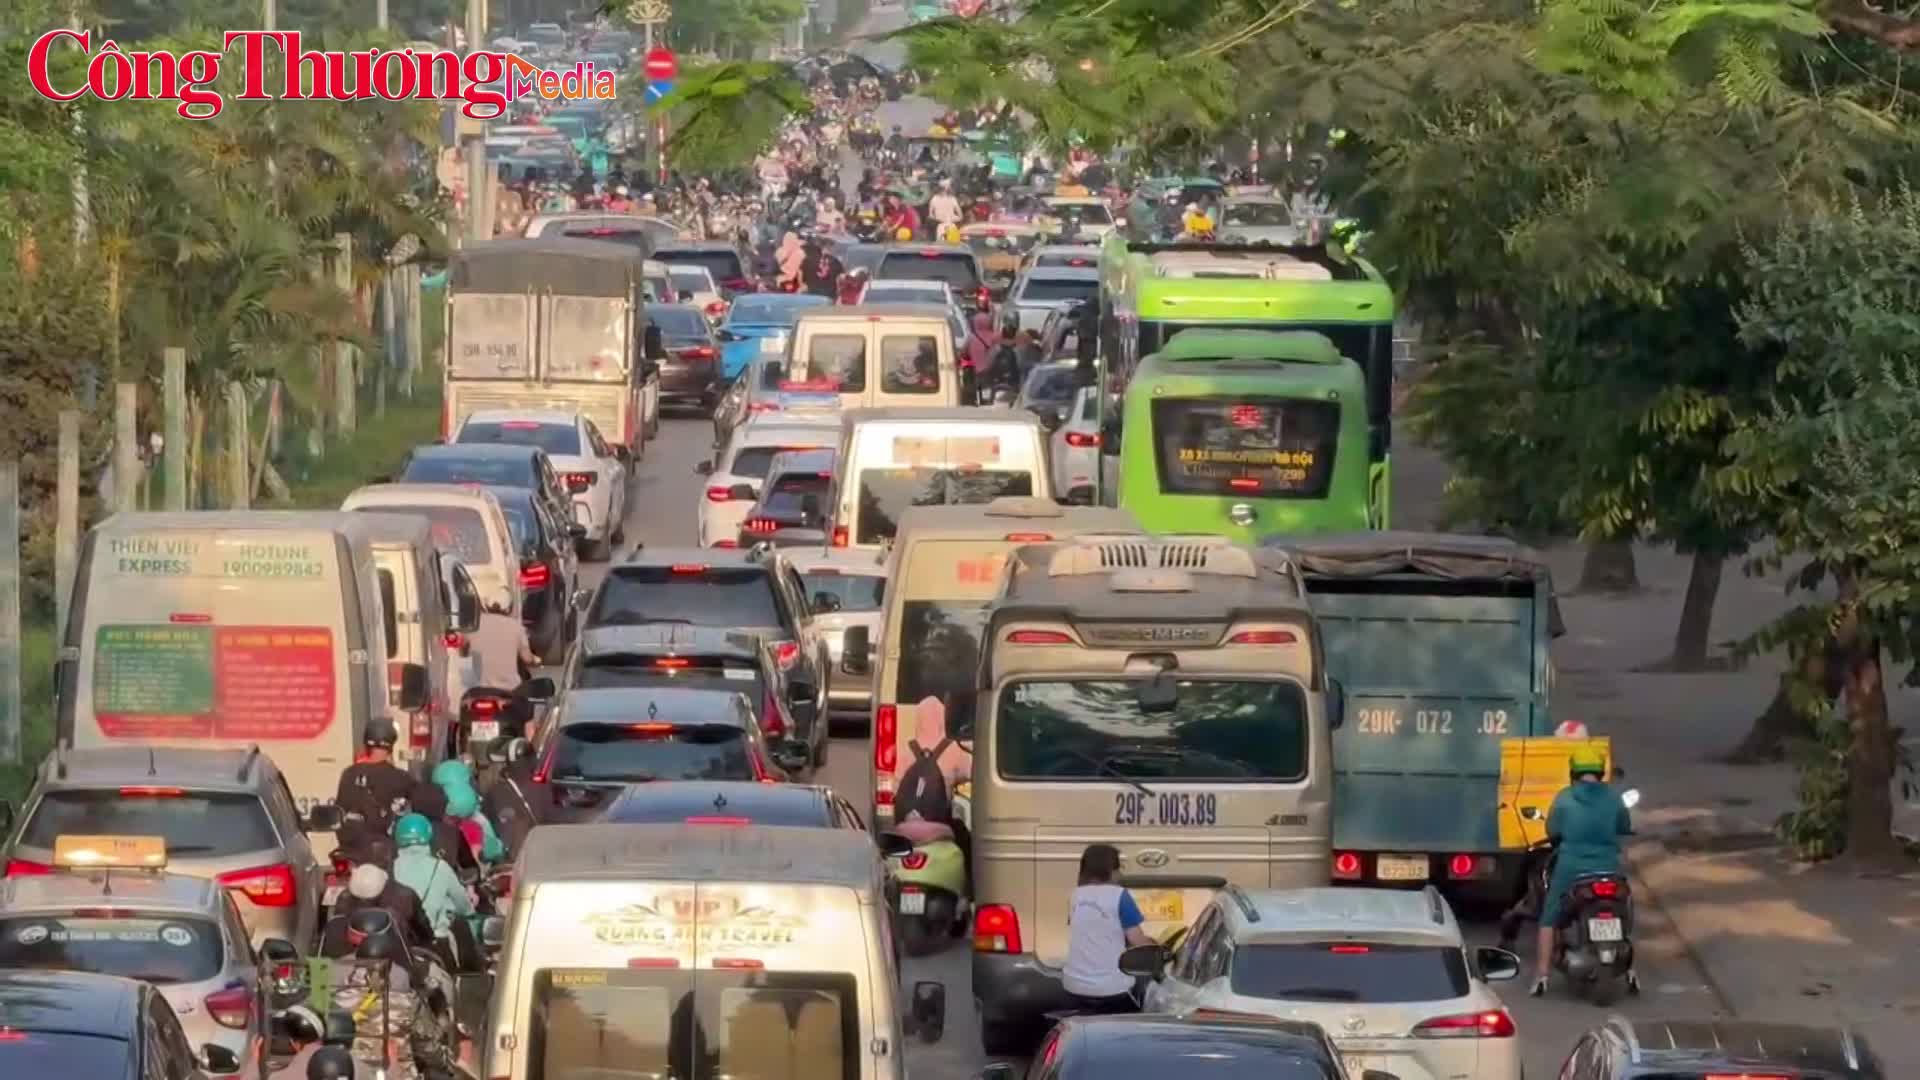 Hà Nội: Người dân hối hả rời thành phố về nghỉ lễ 30/4 - 1/5